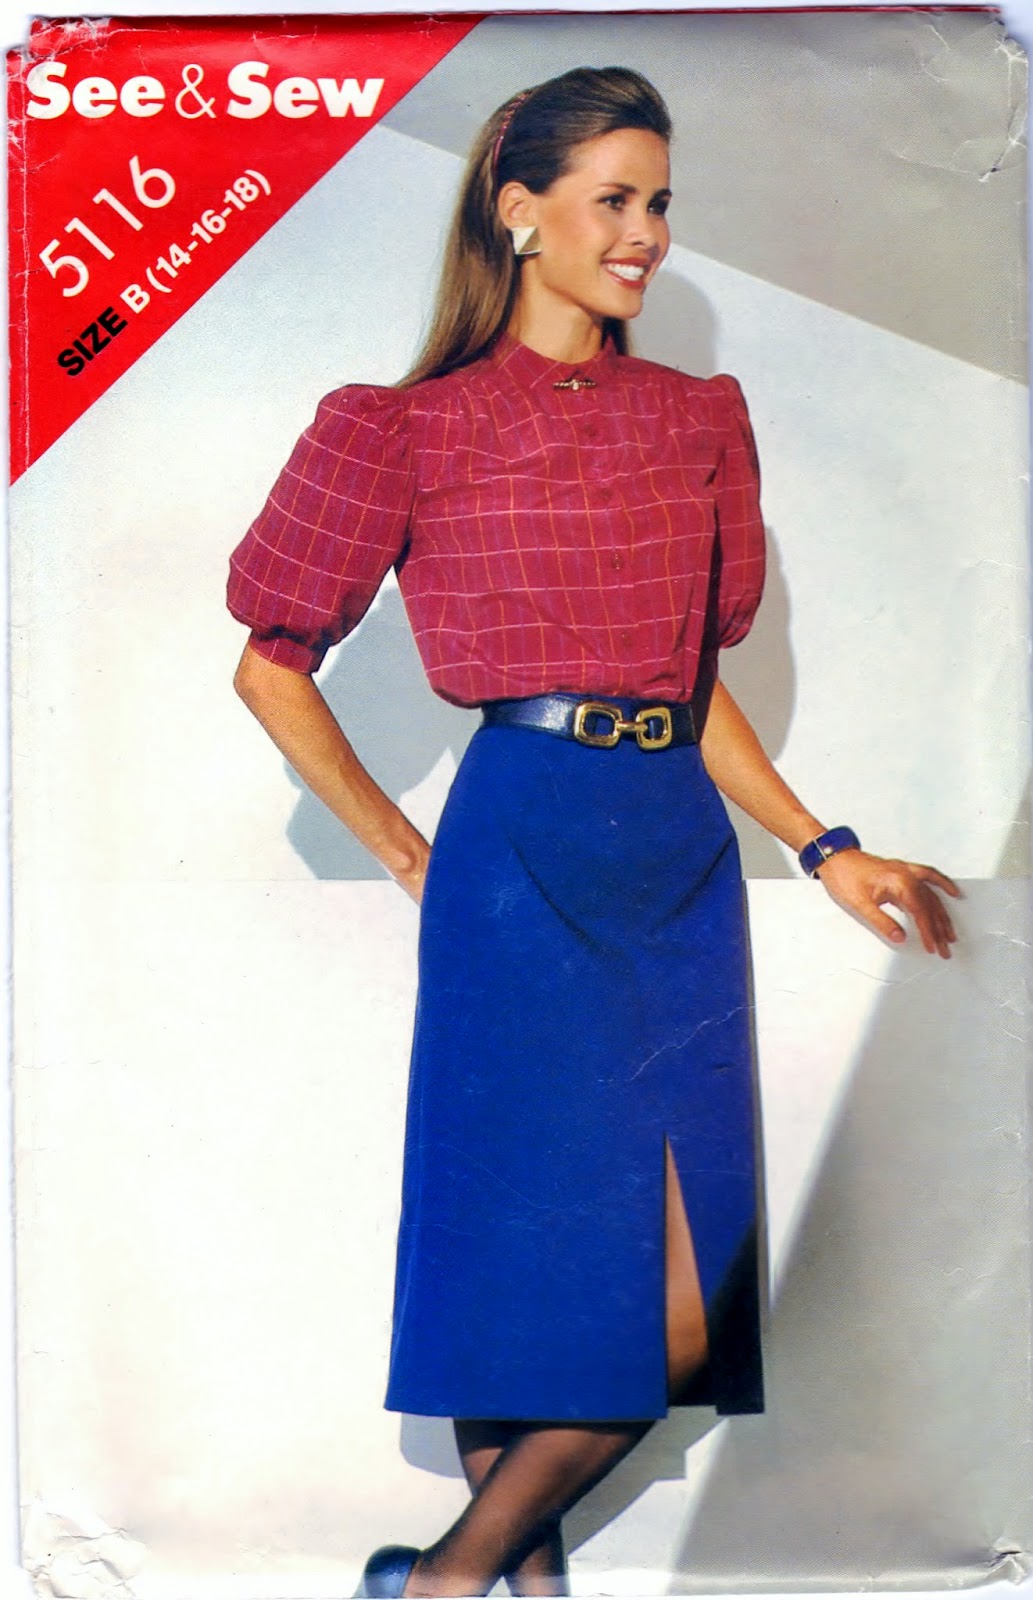 https://www.etsy.com/listing/209374018/see-sew-5116-vintage-diy-misses-blouse?ref=pr_shop